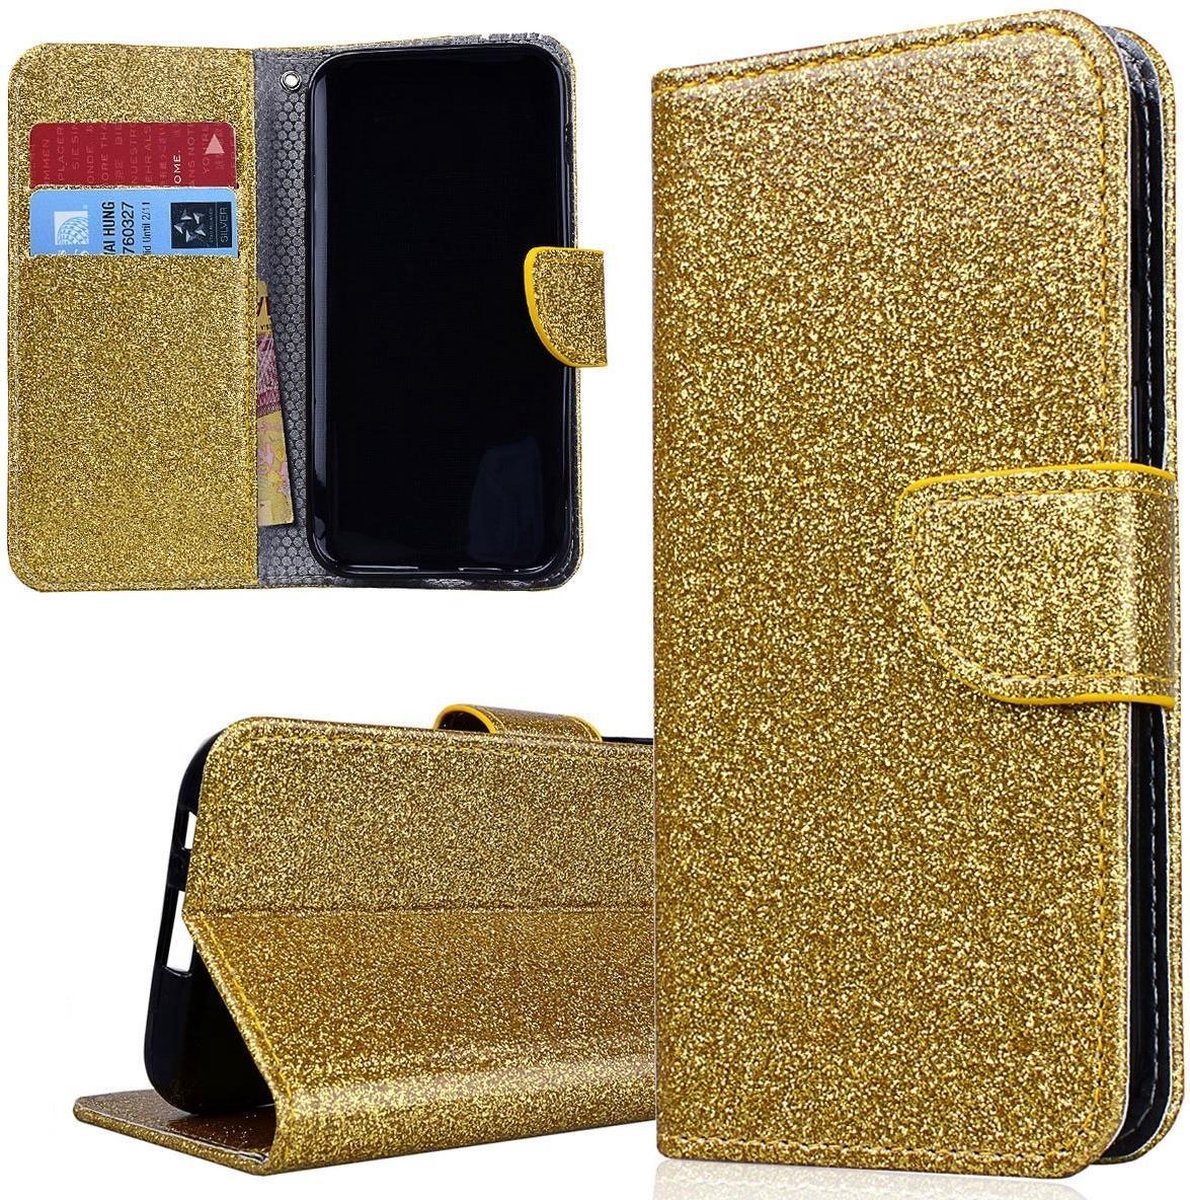 Samsung Galaxy S8 Plus Hoesje - Wallet Case Glitter goud